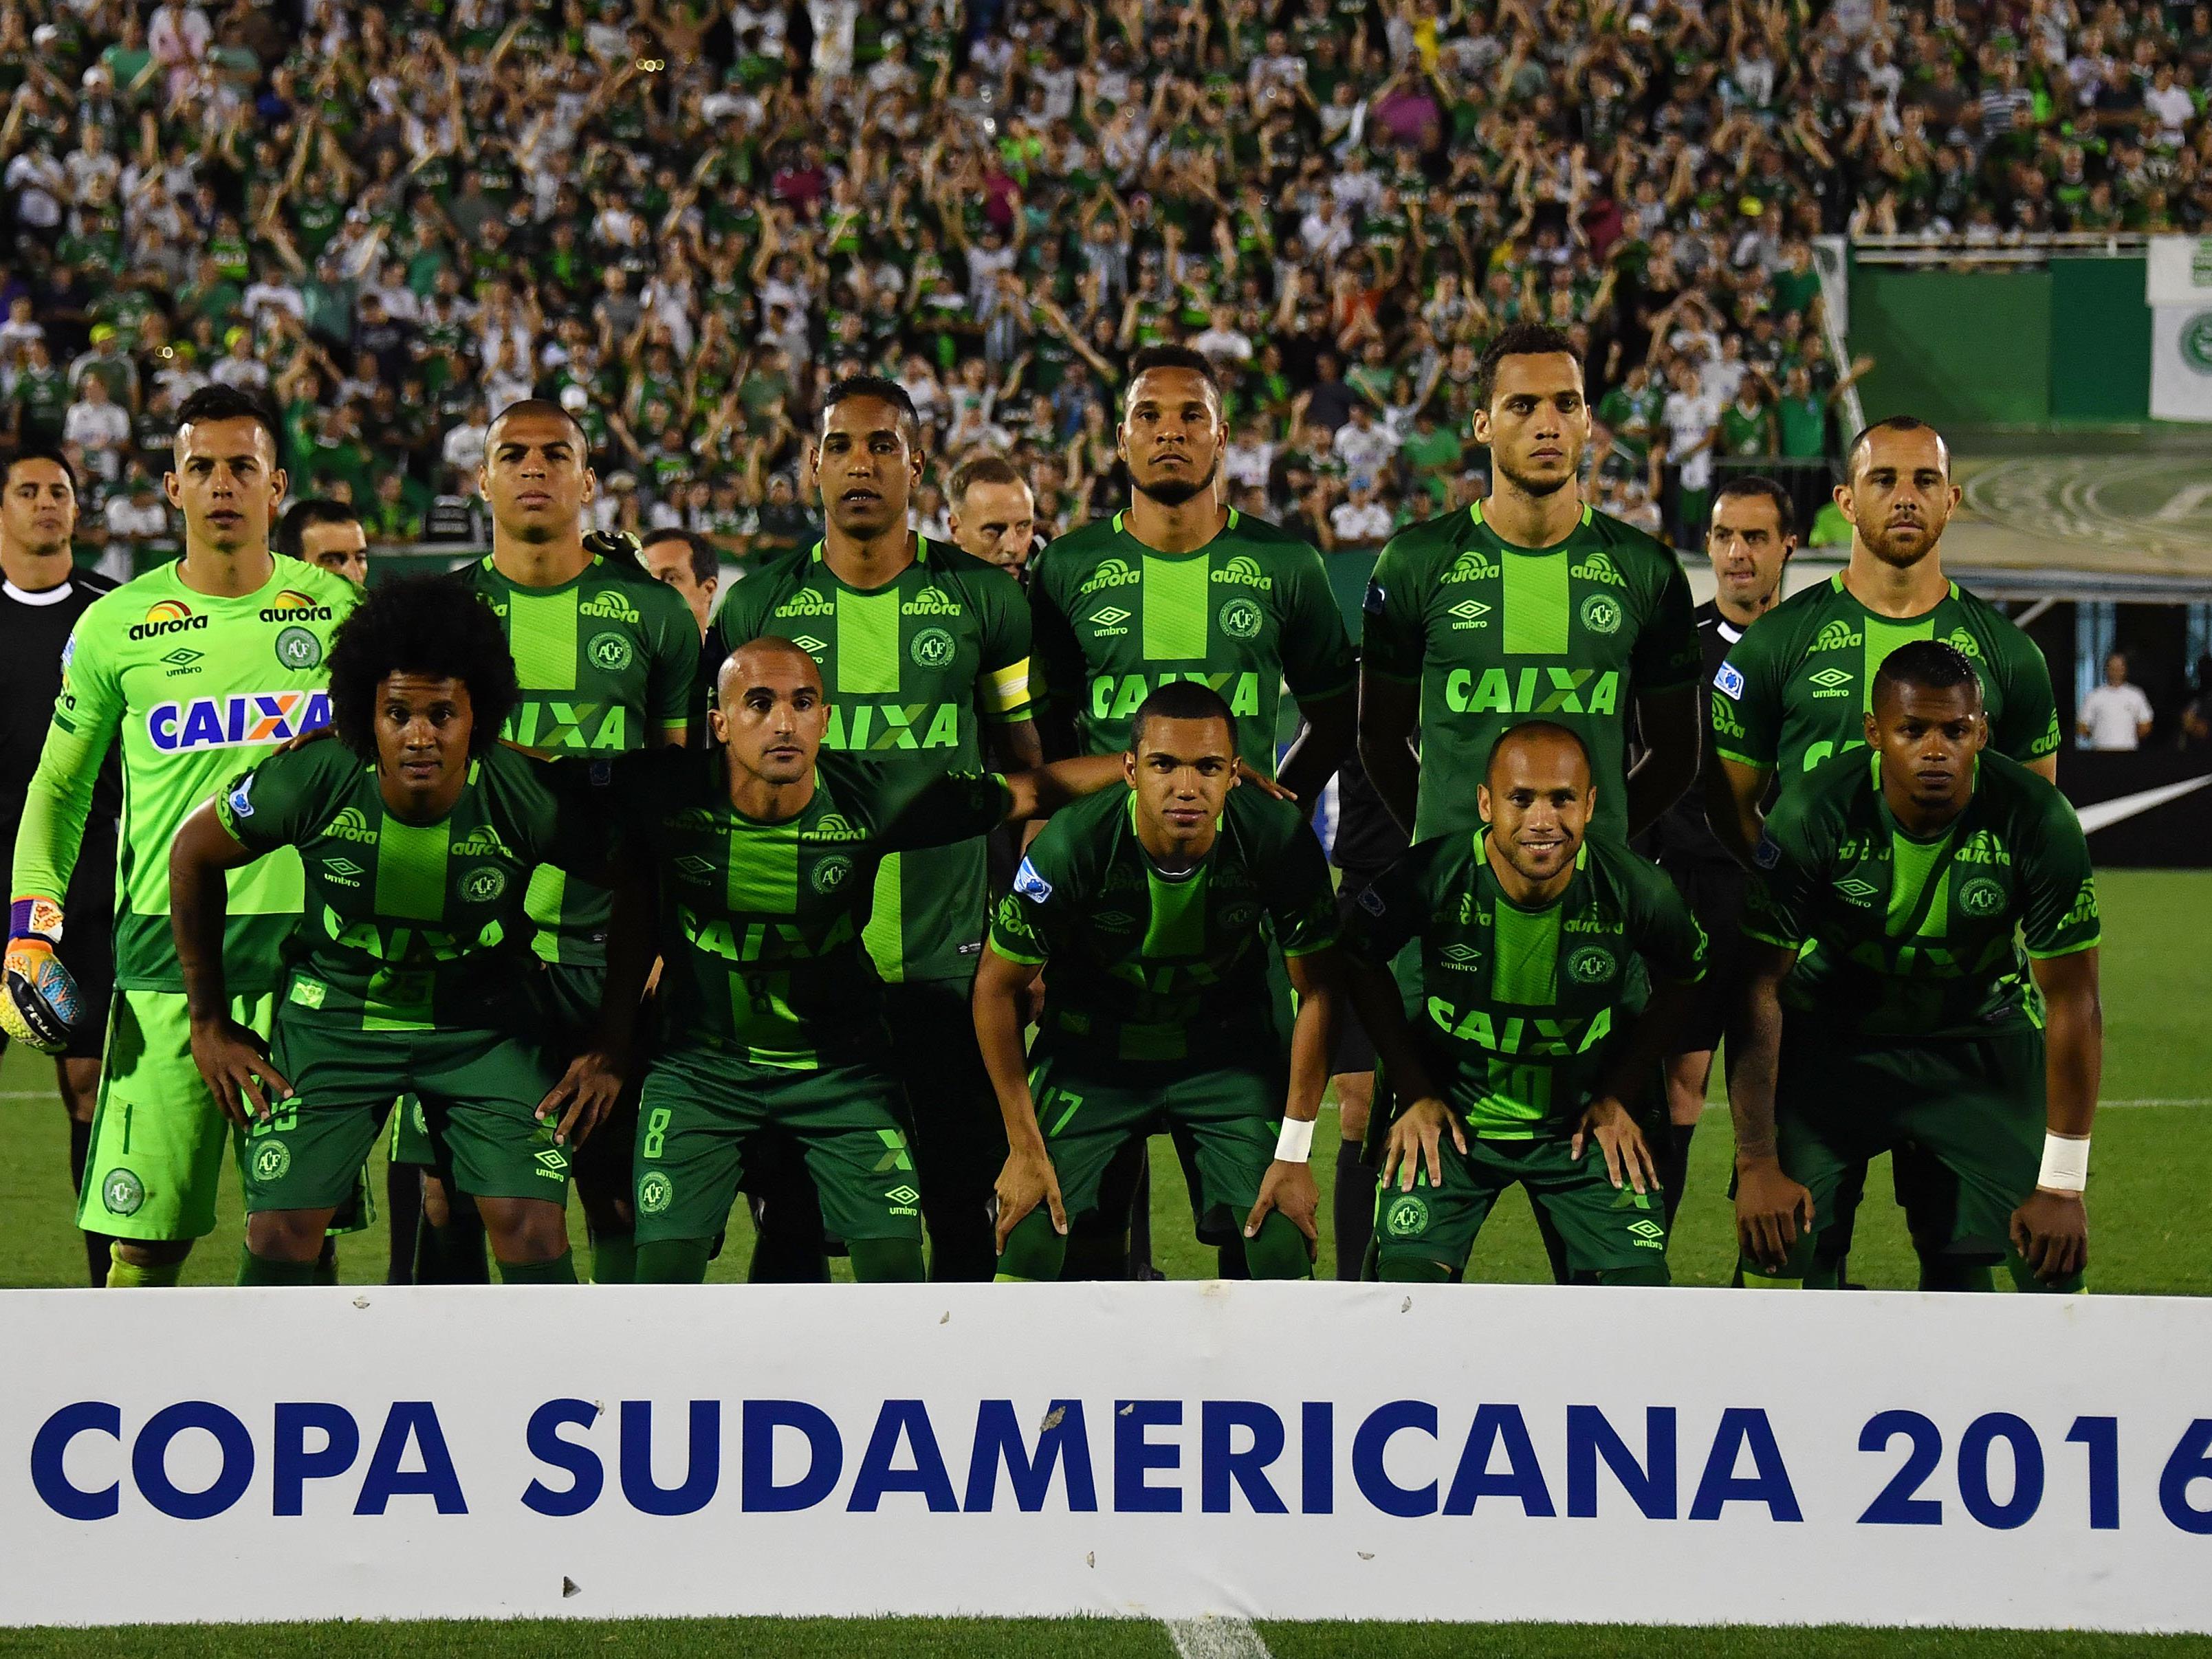 Die Mannschaft des brasilianischen Erstligisten Chapecoense befand sich in dem abgestürzten Flugzeug.